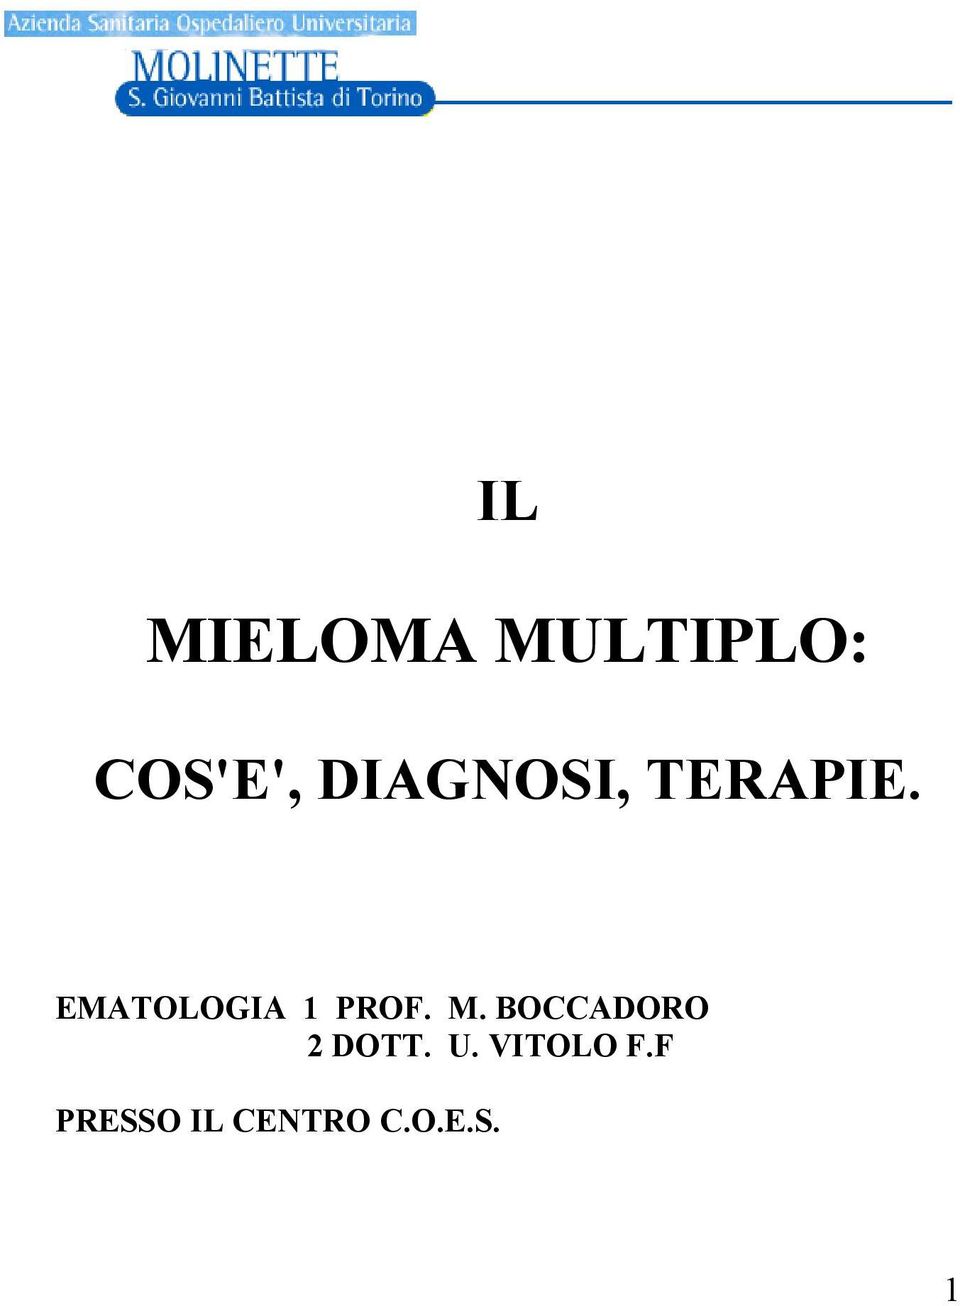 EMATOLOGIA 1 PROF. M.